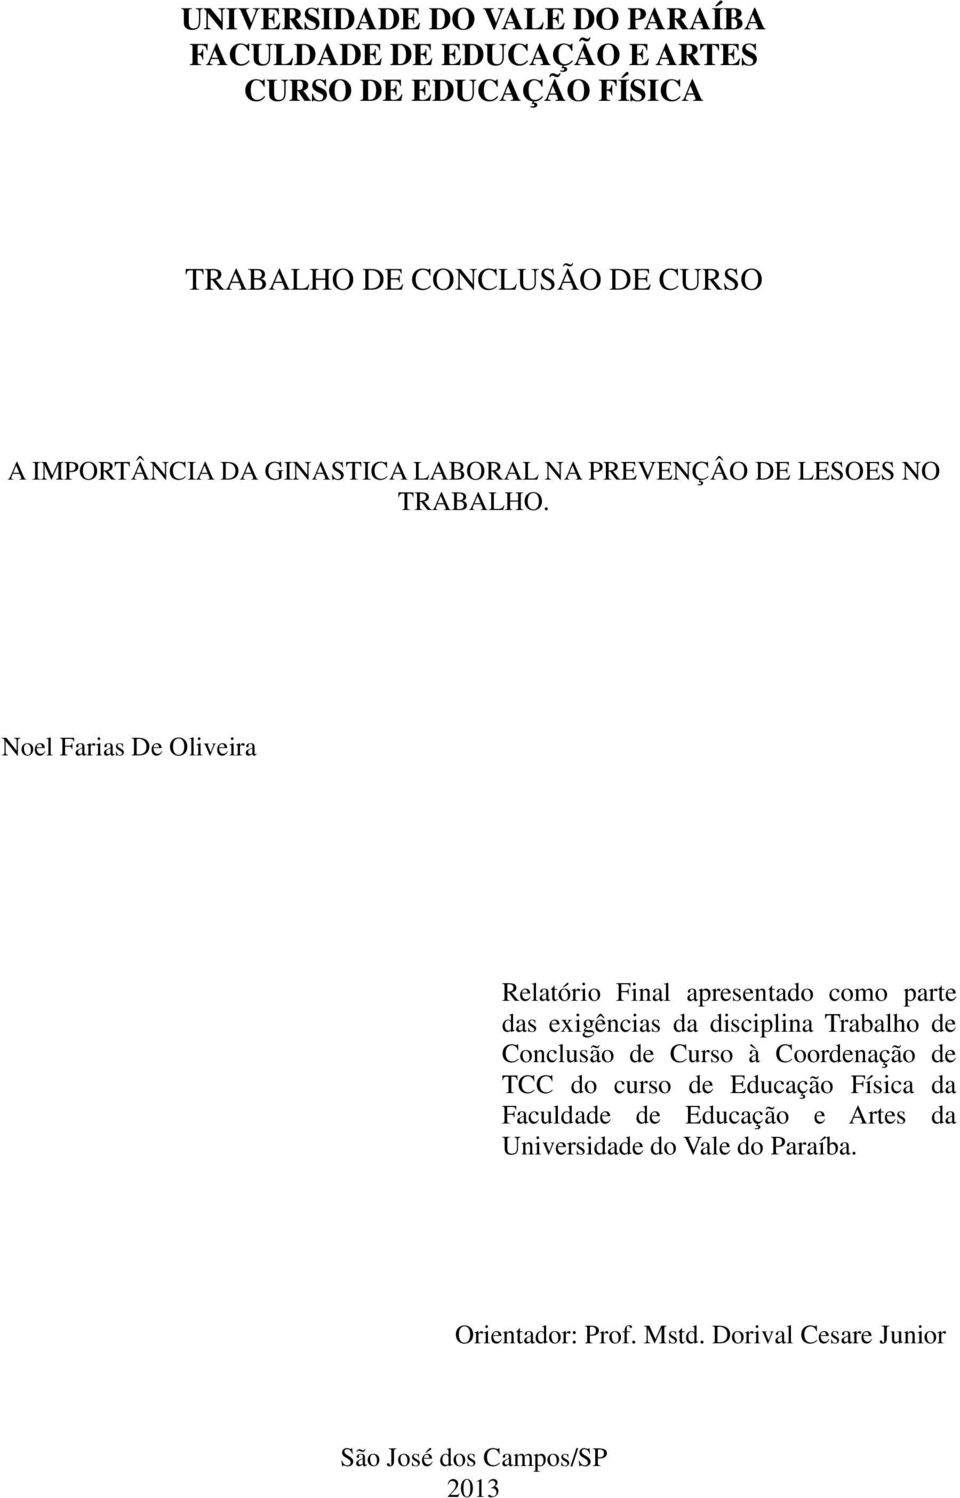 Noel Farias De Oliveira Relatório Final apresentado como parte das exigências da disciplina Trabalho de Conclusão de Curso à